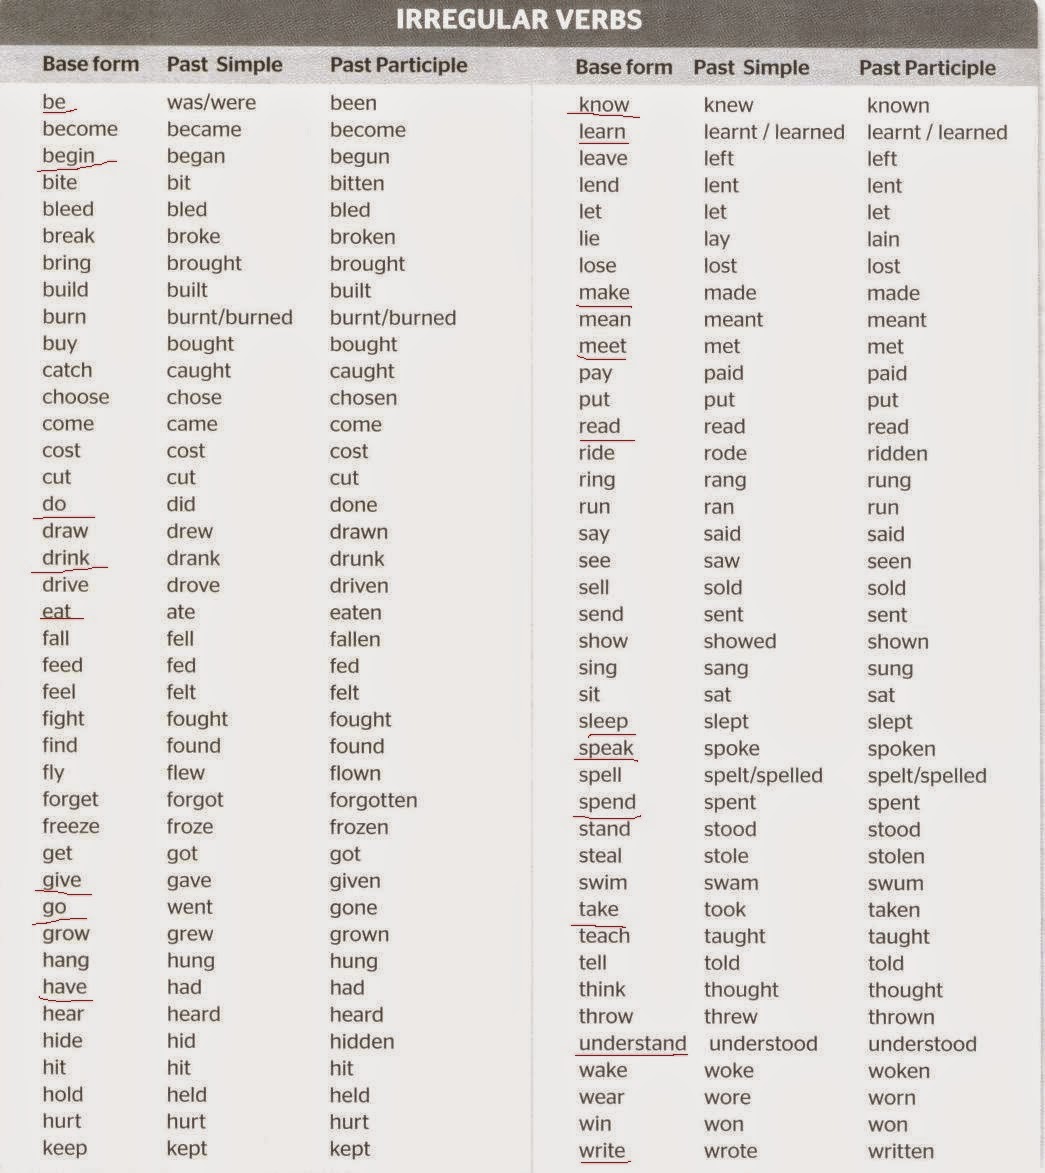 List of Irregular verbs.